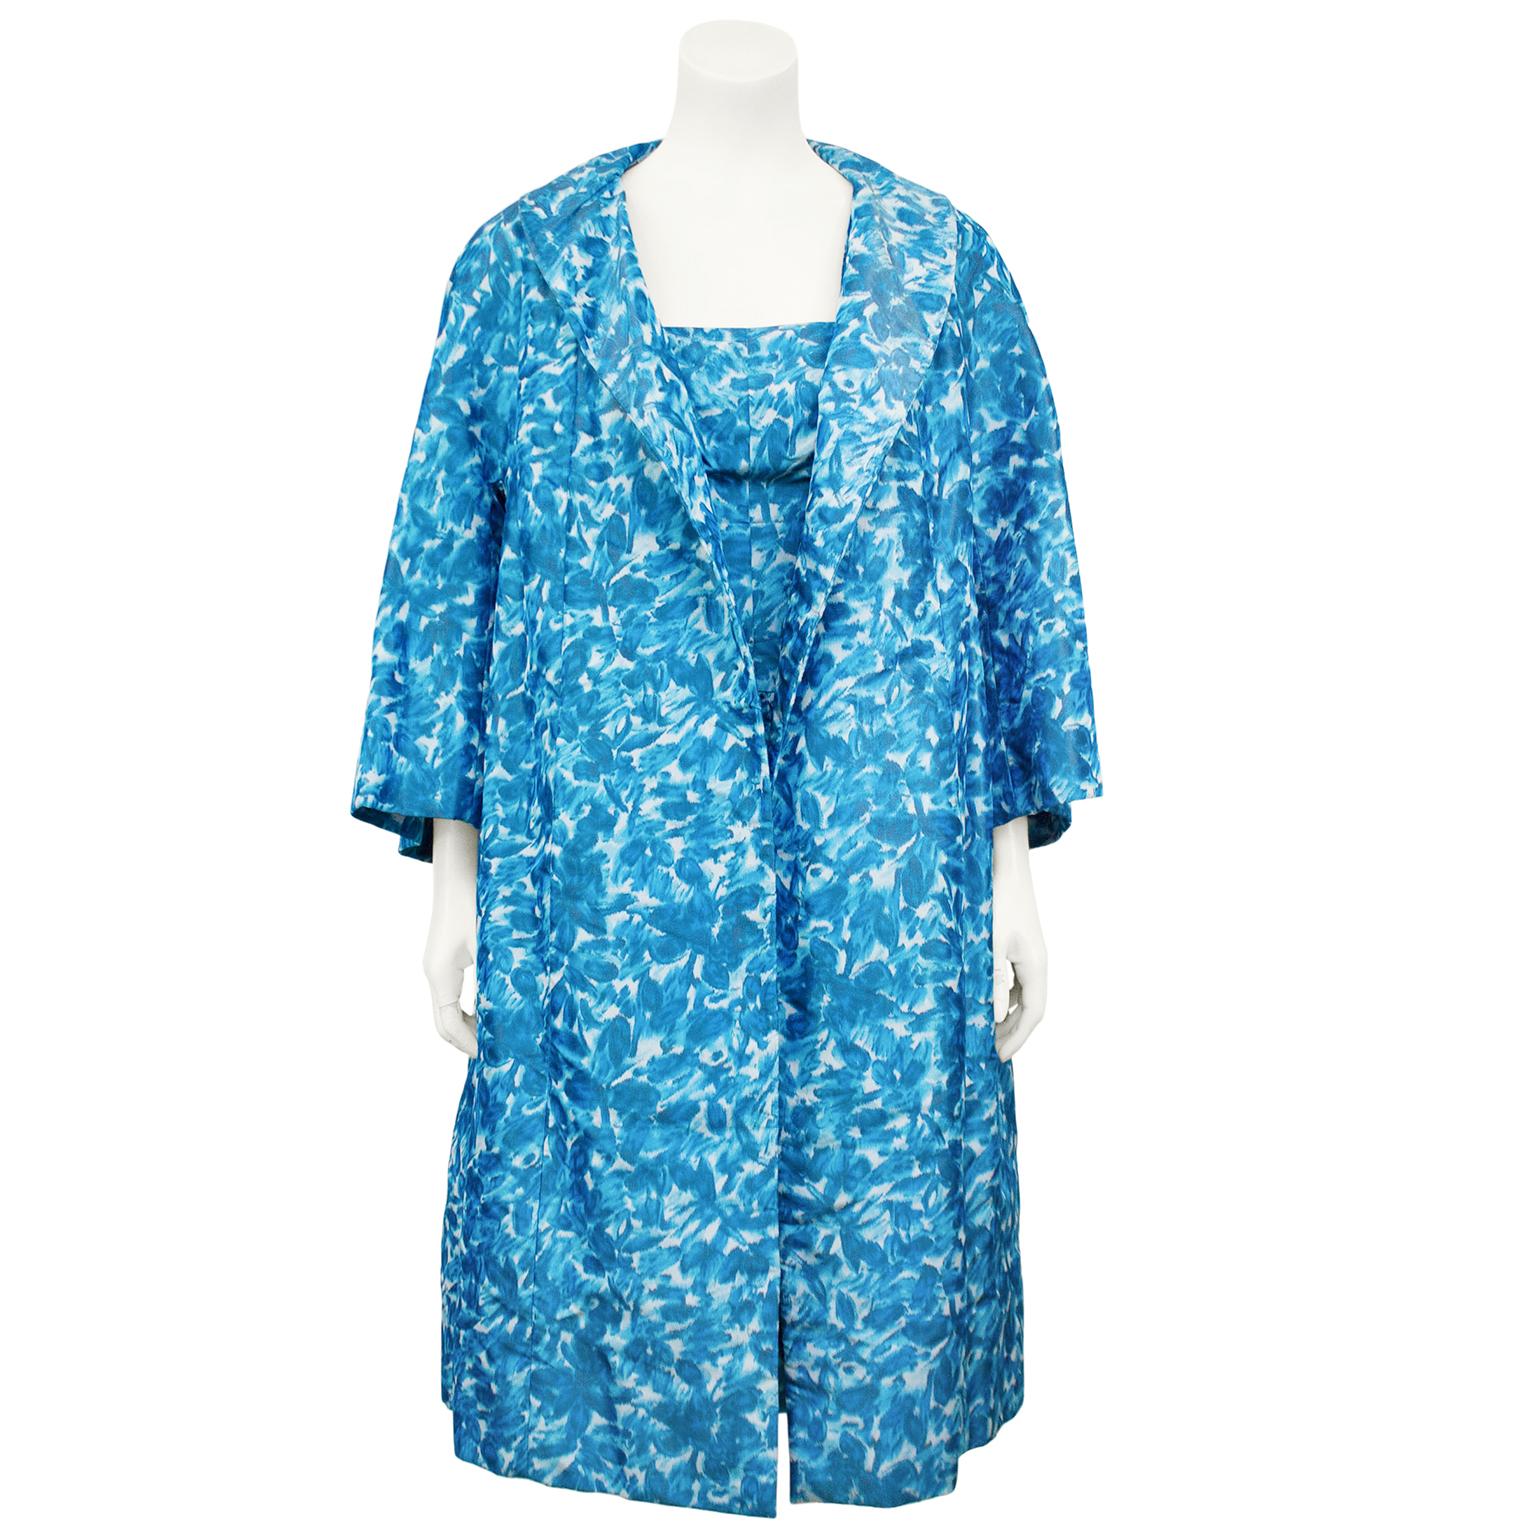 Superbe ensemble en taffetas de soie bleu à fleurs abstraites George Carmel New York des années 1950. La robe Cocktial présente une encolure carrée, un corsage ajusté et une jupe bulle à volants. La finition est parfaite avec une demi-courroie qui